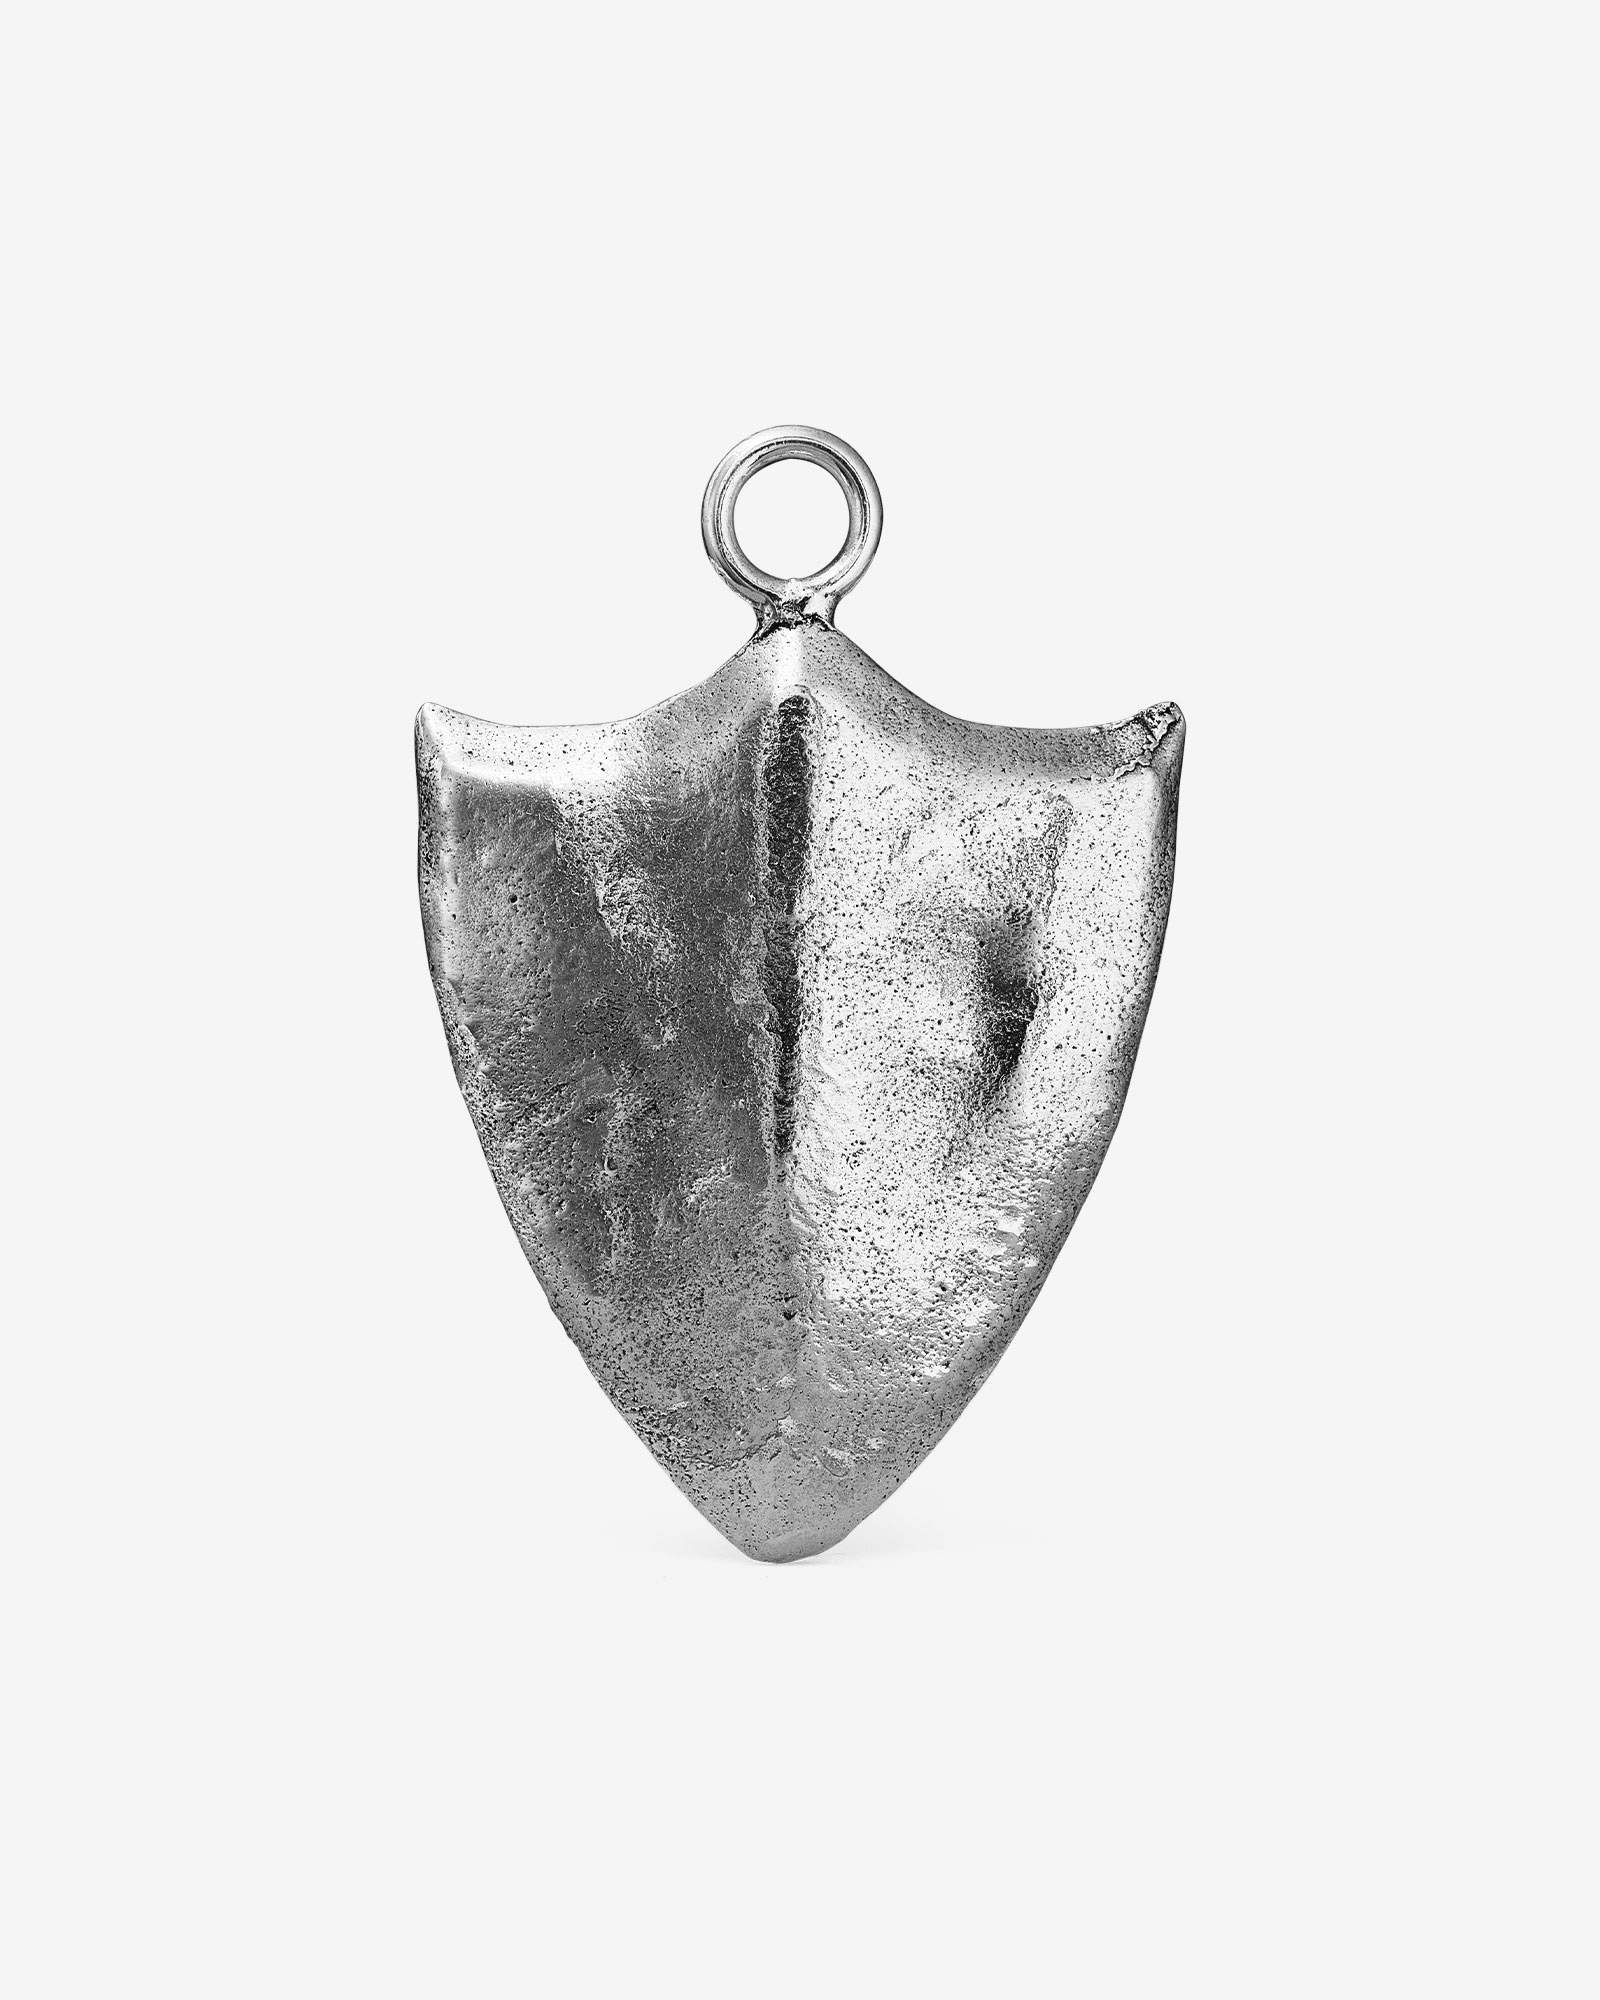 Saxon Shield Charm - Charms & Pendants by Ask & Embla